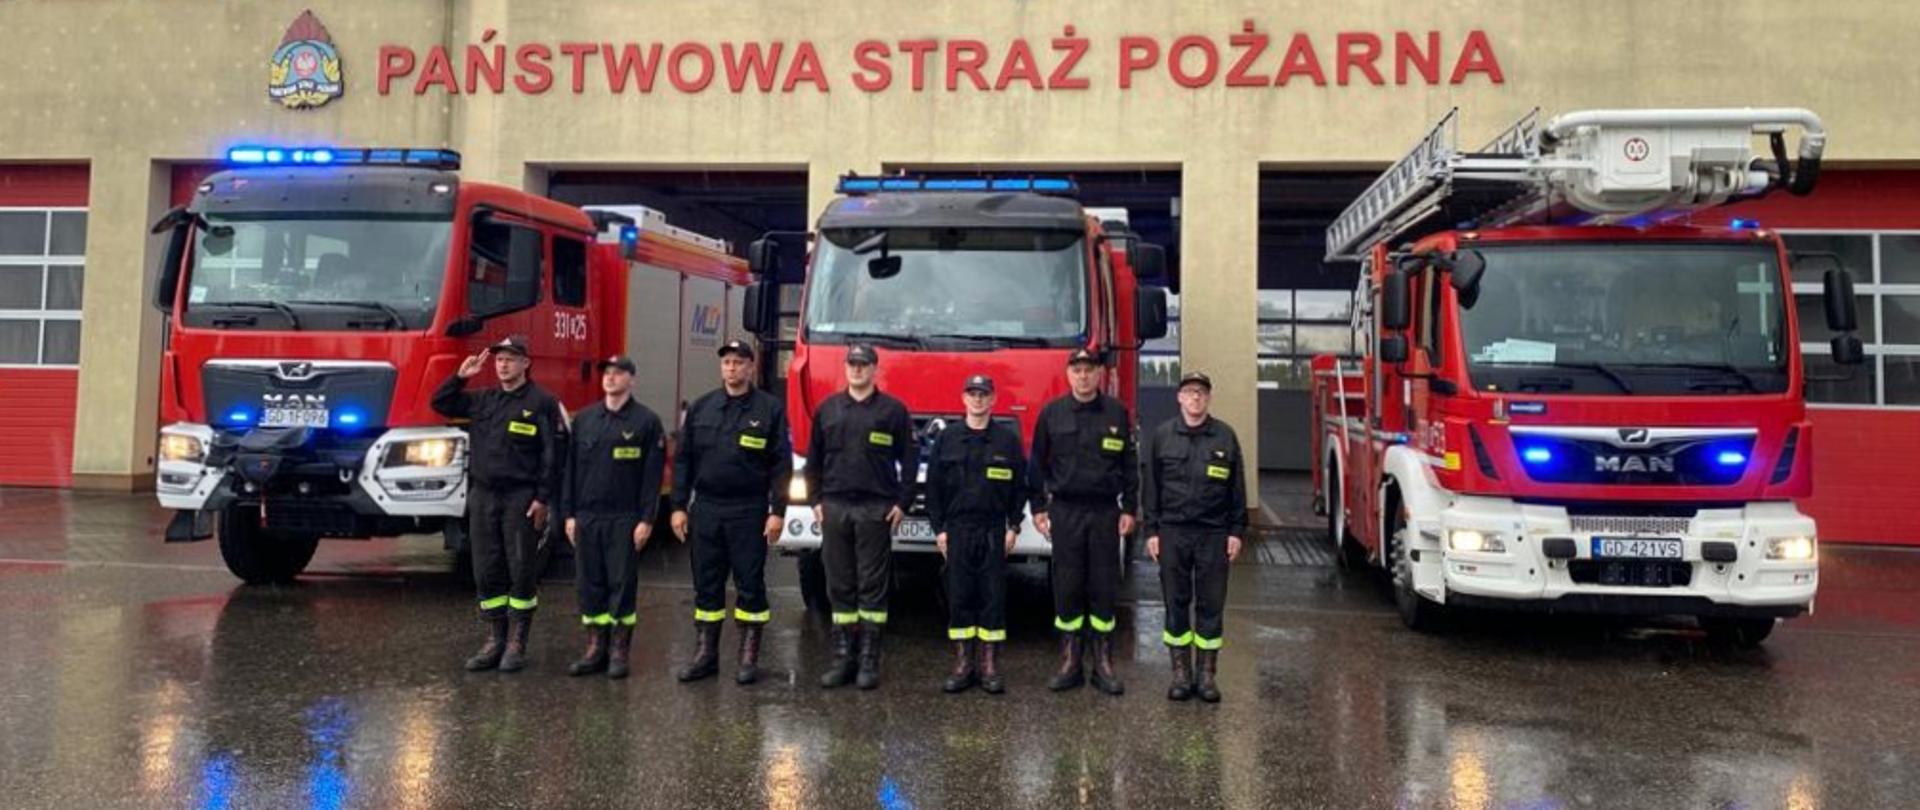 Zdjęcie przedstawia funkcjonariuszy JRG w Pruszczu Gdańskim oddających hołd Powstańcom Warszawskim na tle samochodów pożarniczych z włączoną sygnalizacją świetlno-dźwiękową.